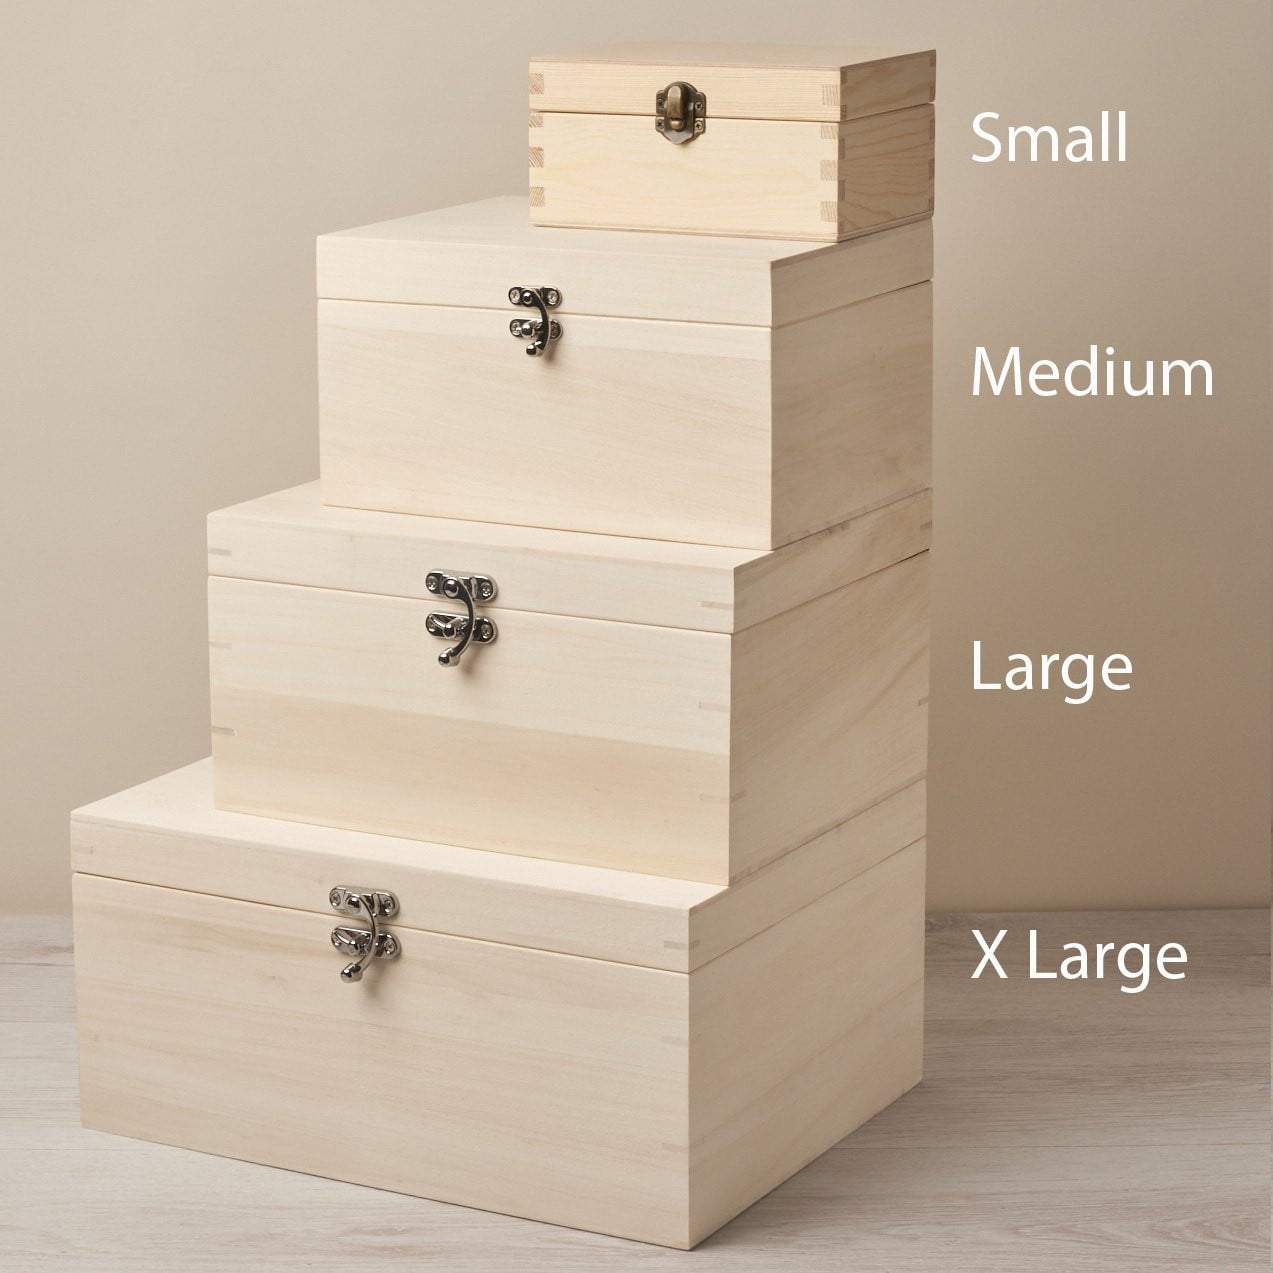 Keepsake Box - Personalised Wooden Pet Memorial Box - Bones